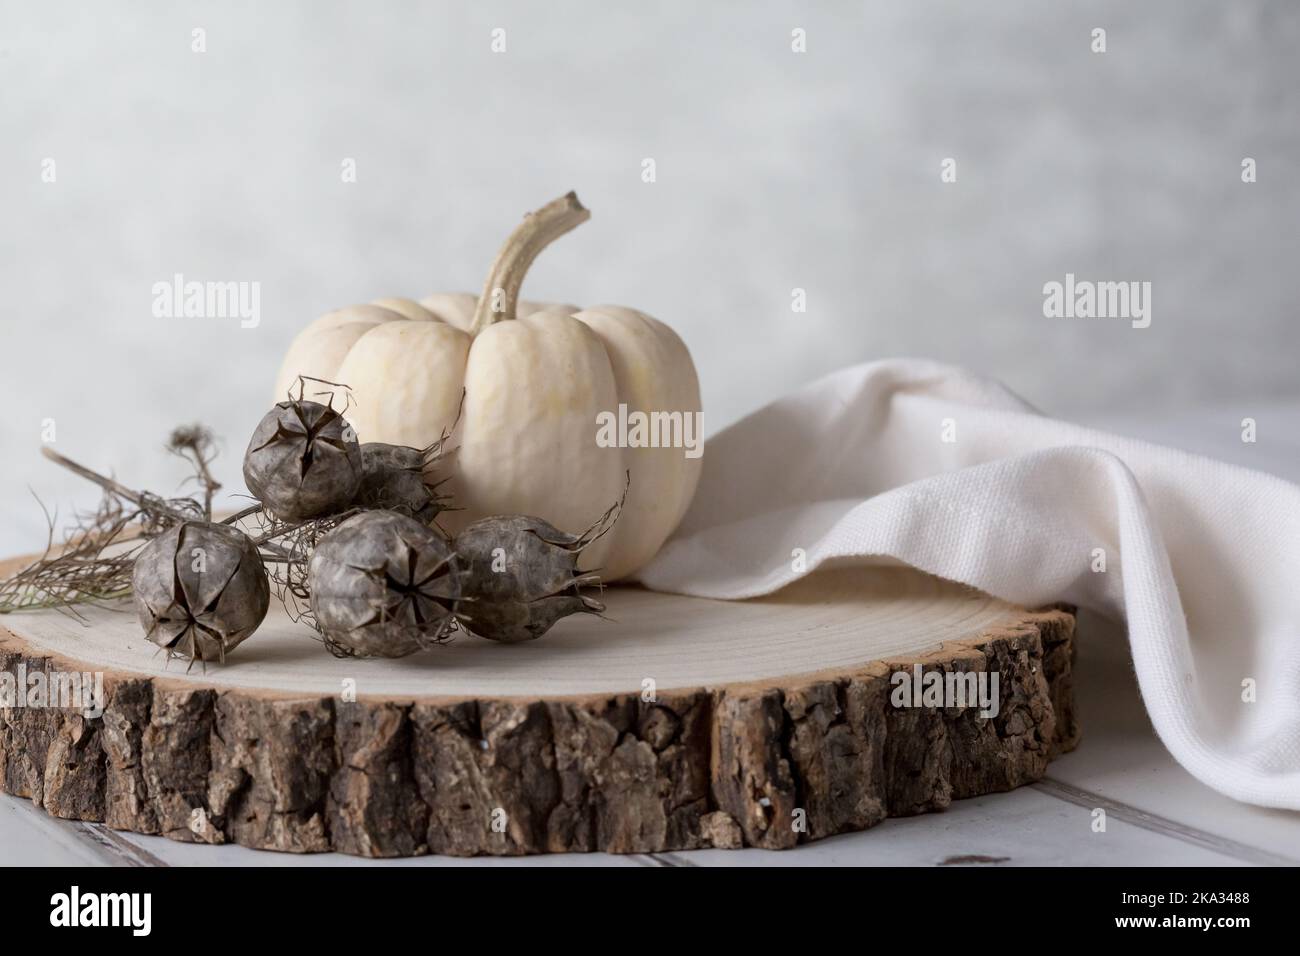 Citrouille bébé Boo Ghost sur bloc de bois avec des graines de nigelle et serviette en lin crème sur un fond clair. Net, léger et aéré. Espace pour la copie. Banque D'Images